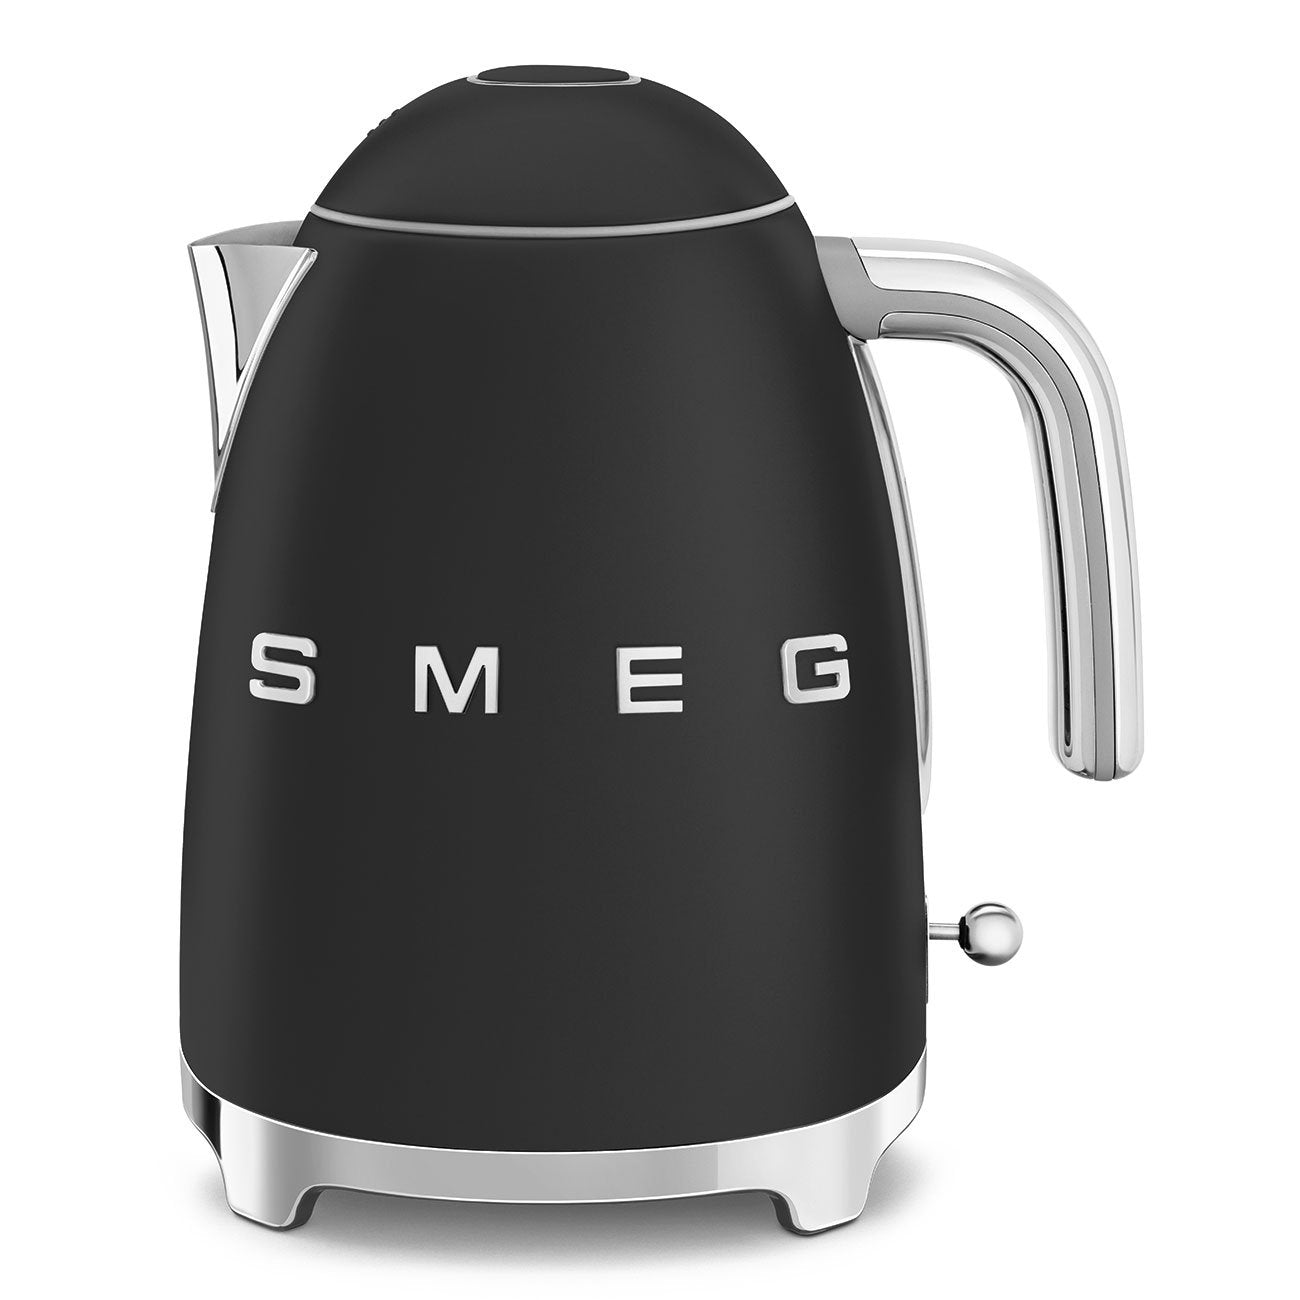 SMEG / kettle / matt, gold, silver